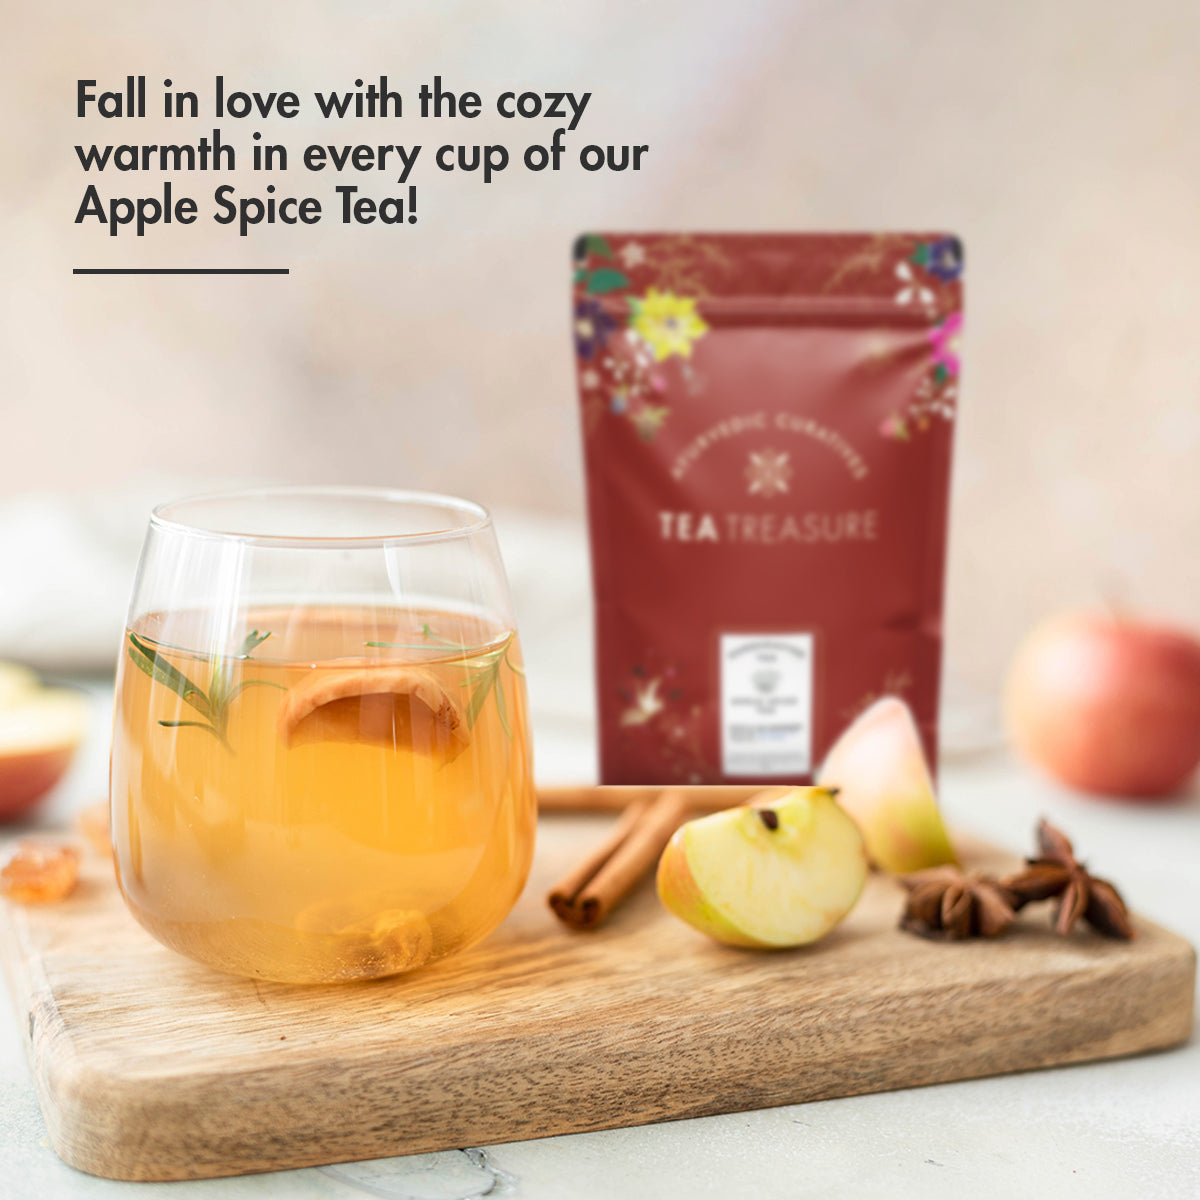 Apple Spice Tea